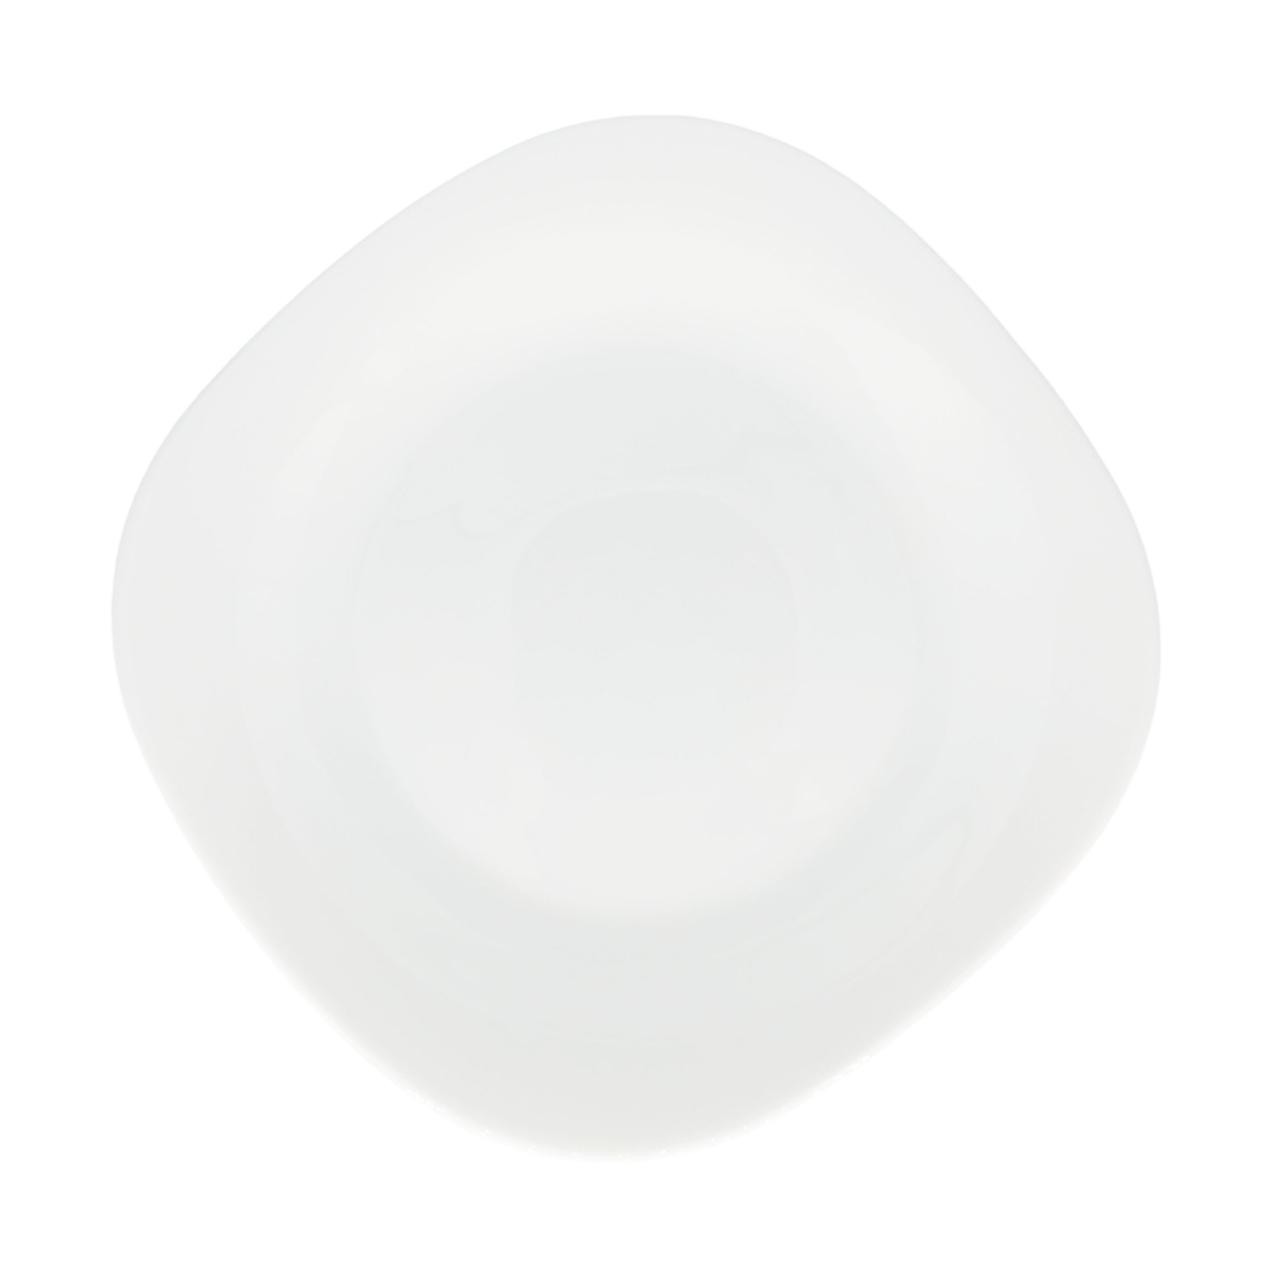 тарелка обеденная legio nova белая 22 см 887222 eva solo Тарелка обеденная Кулинарк белая каре 27 см